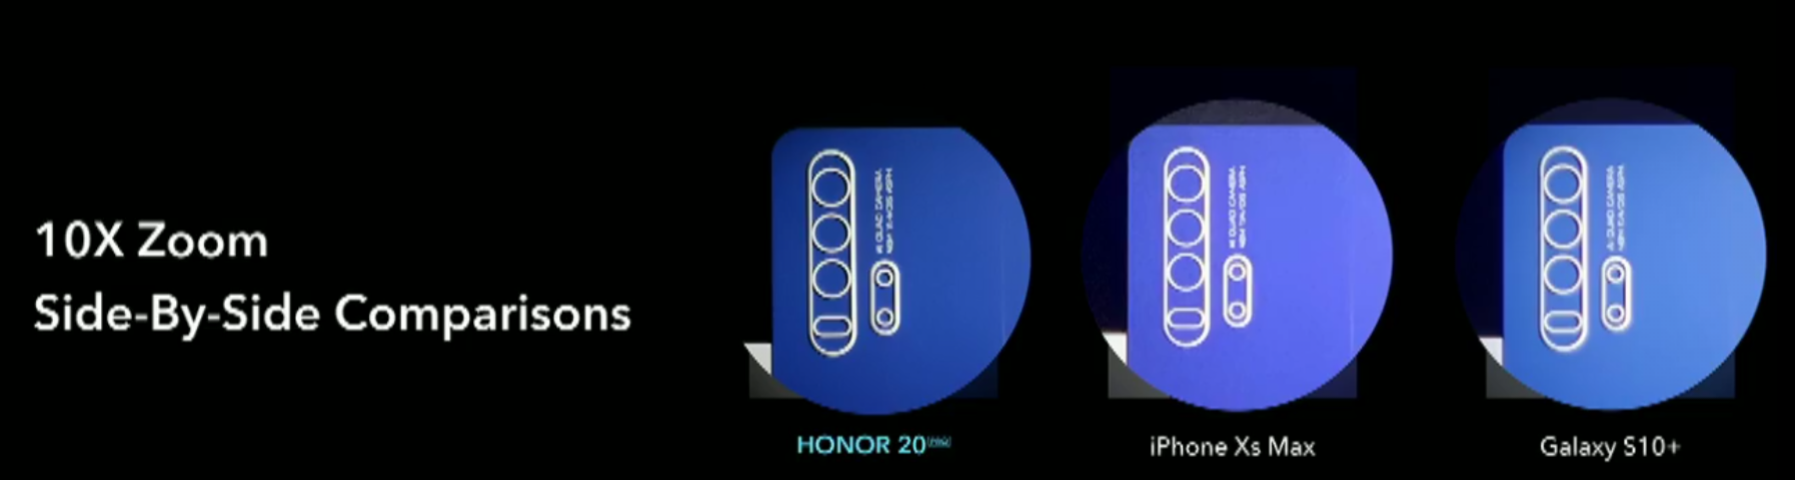 Honor-20-Honor-20-Pronun-Kamerası-Bize-Neler-Sunuyor